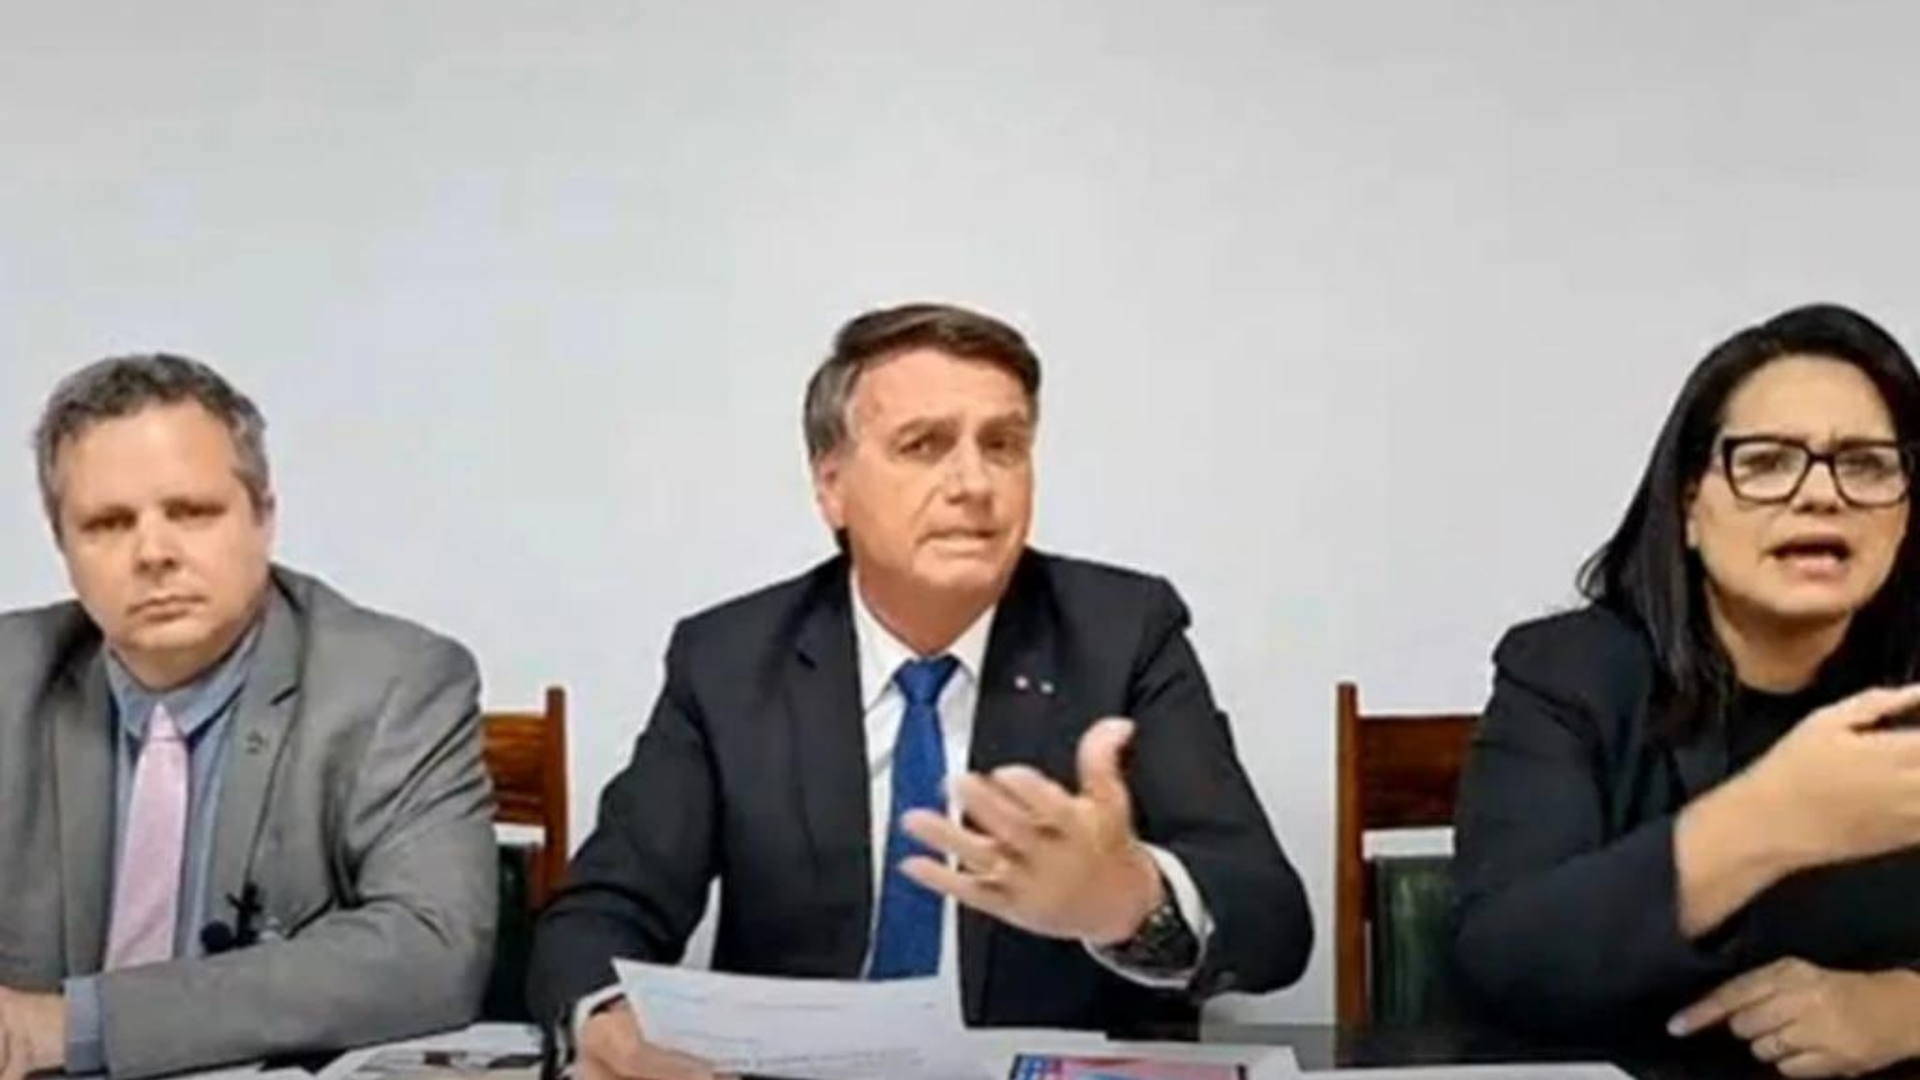 Em ato falho, Bolsonaro diz que não tinha “motivo para matar Marielle Franco”. Foto de Bolsonaro durante a live semanal no YouTube